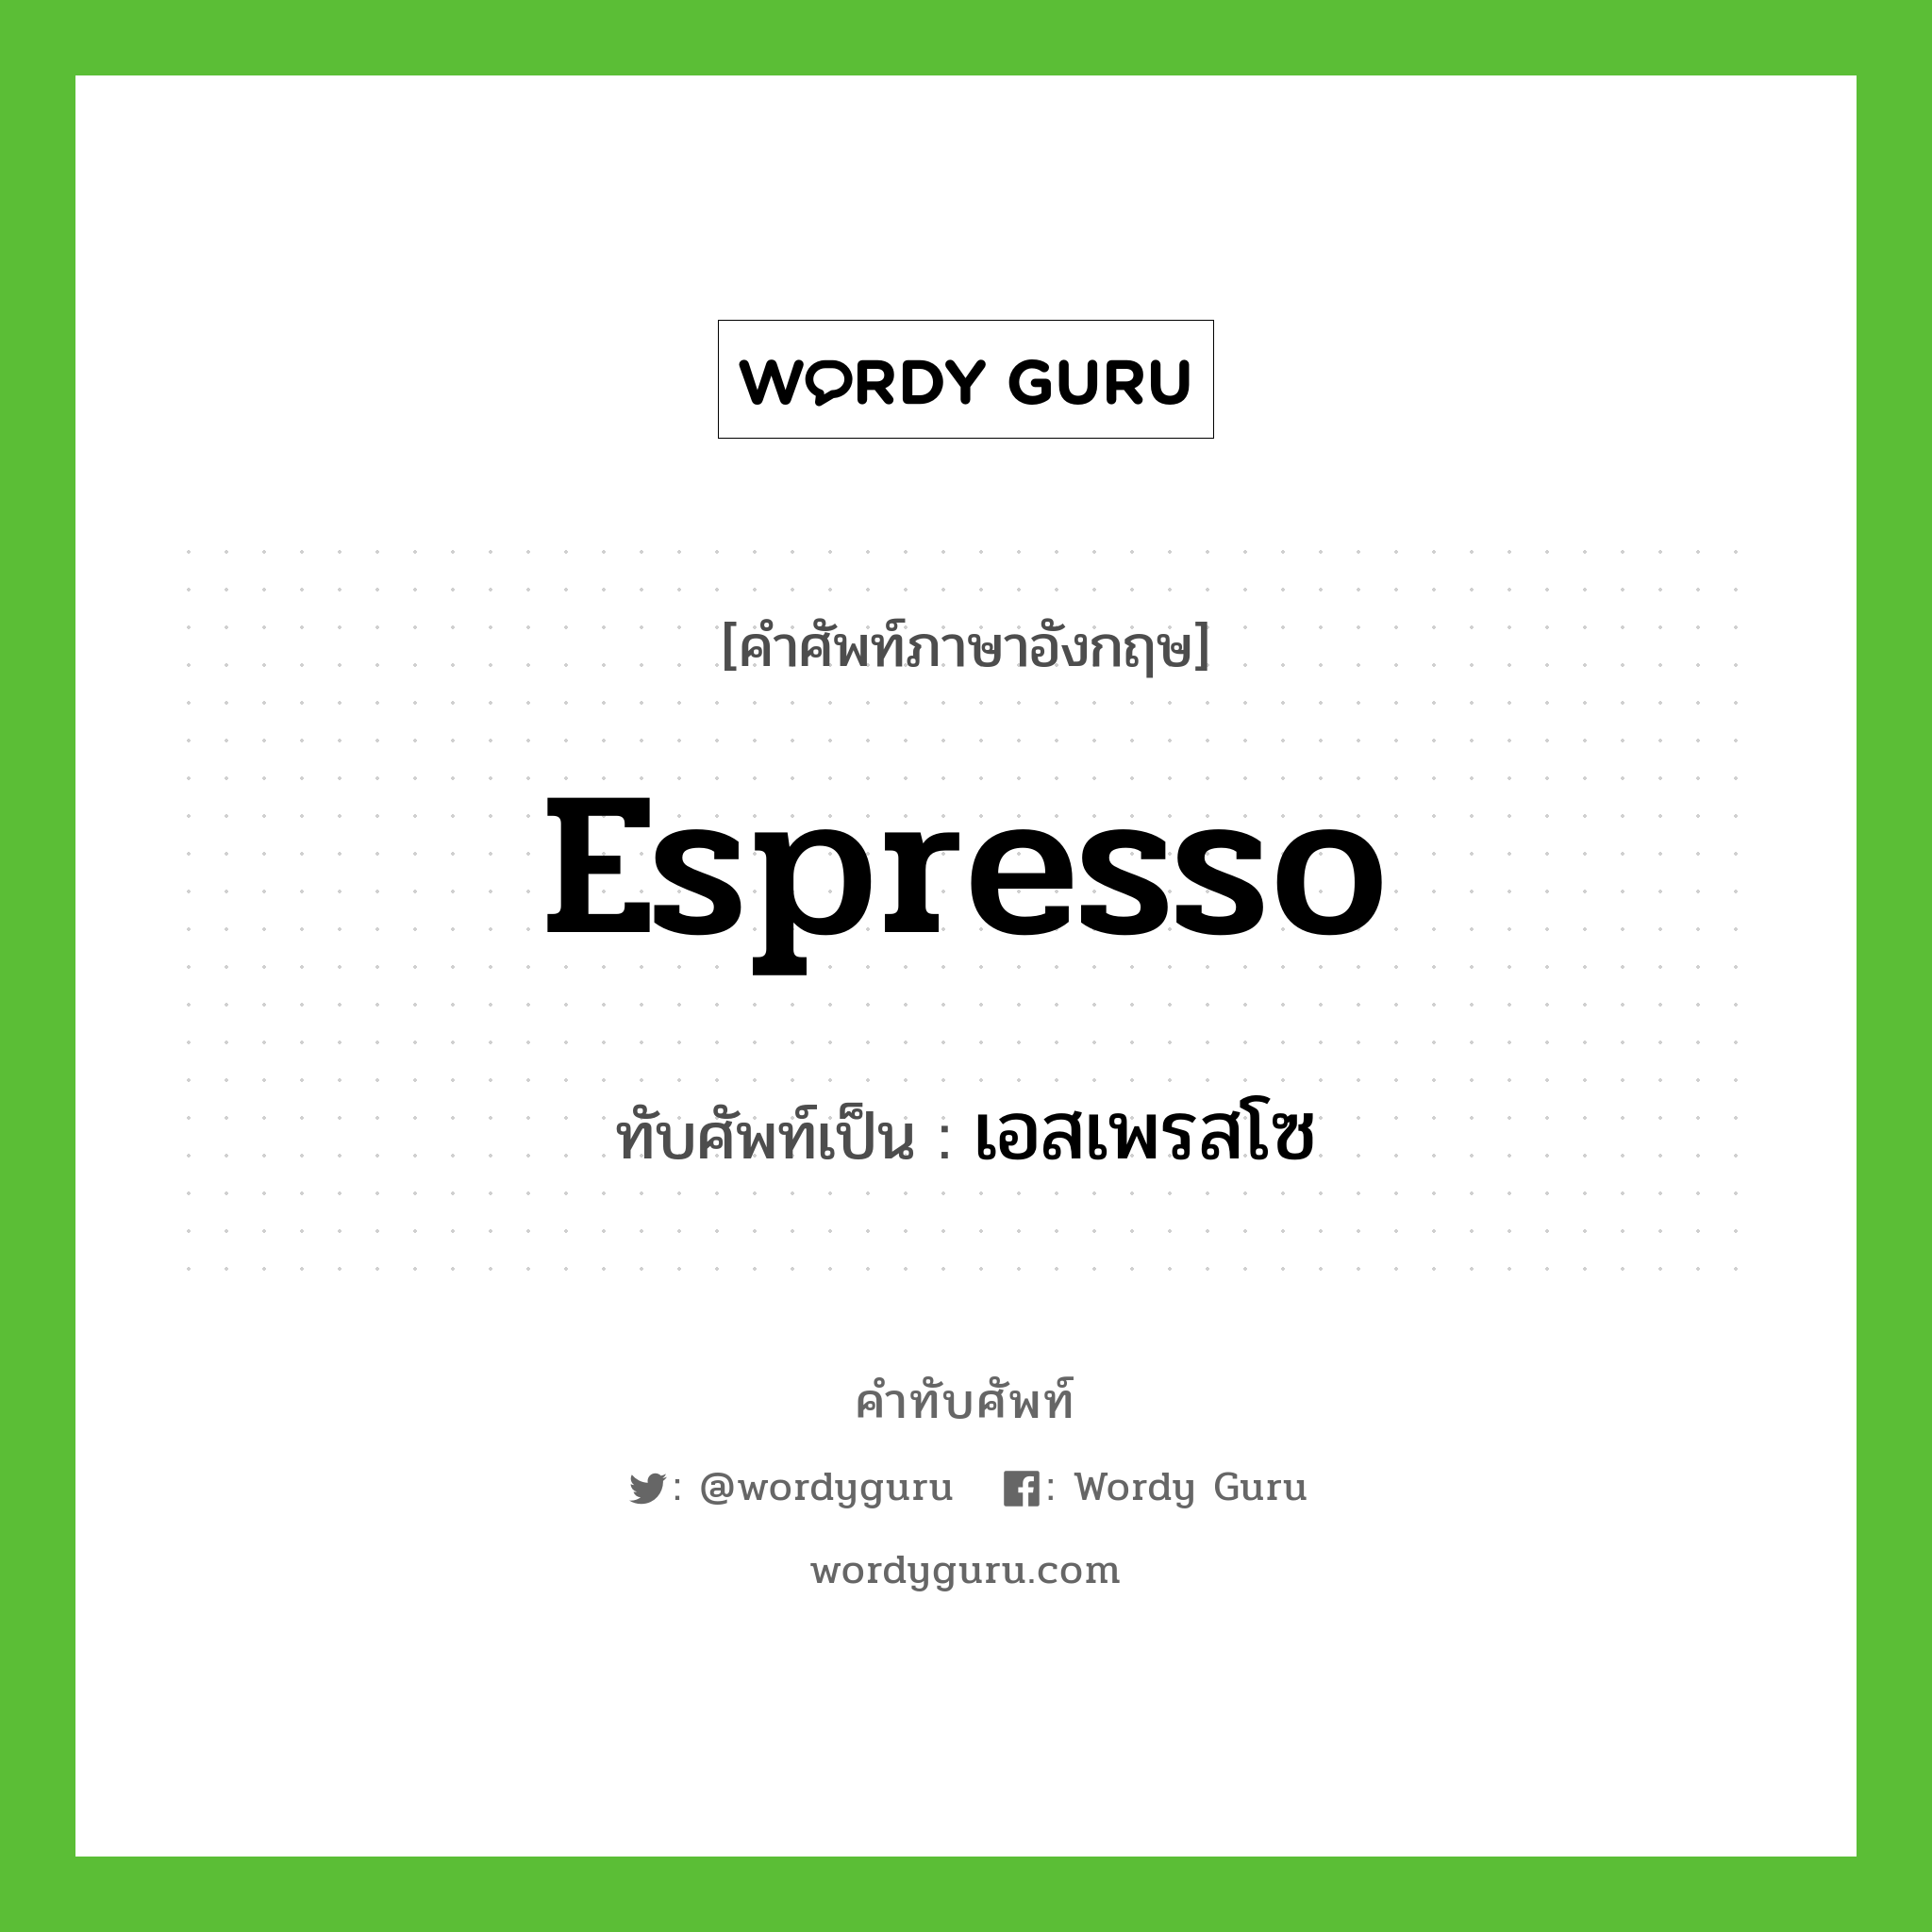 เอสเพรสโซ เขียนอย่างไร?, คำศัพท์ภาษาอังกฤษ เอสเพรสโซ ทับศัพท์เป็น espresso